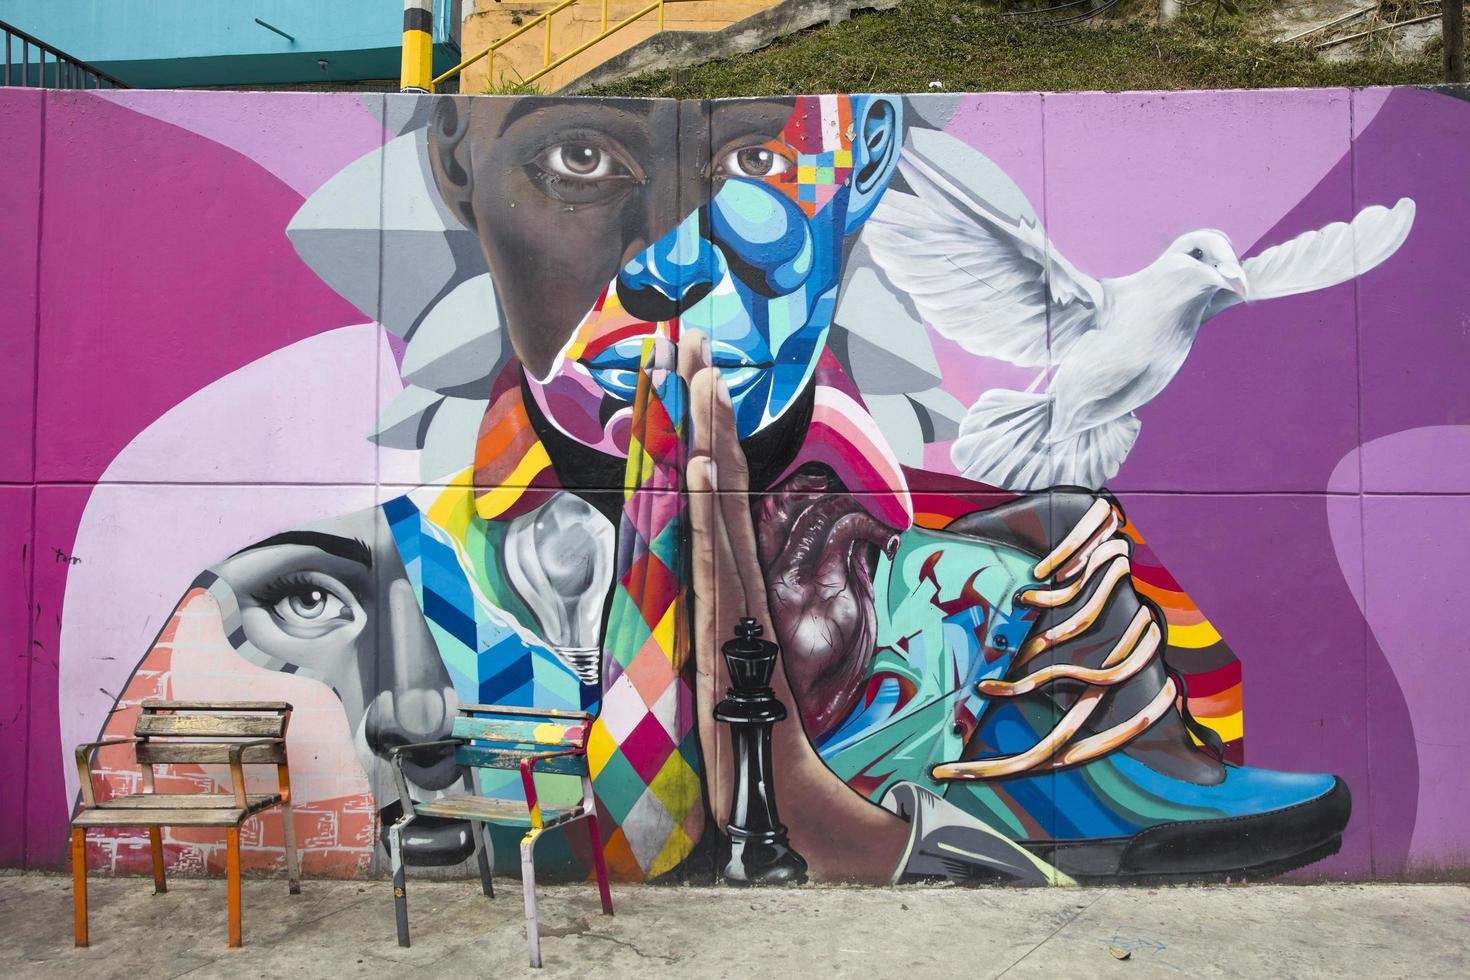 medellin, colombia, 2019 - street art di comuna 13 a medellin, colombia. un tempo conosciuto come il barrio più pericoloso della Colombia, oggi il tour dei graffiti è una delle attrazioni turistiche più popolari di Medellin. foto